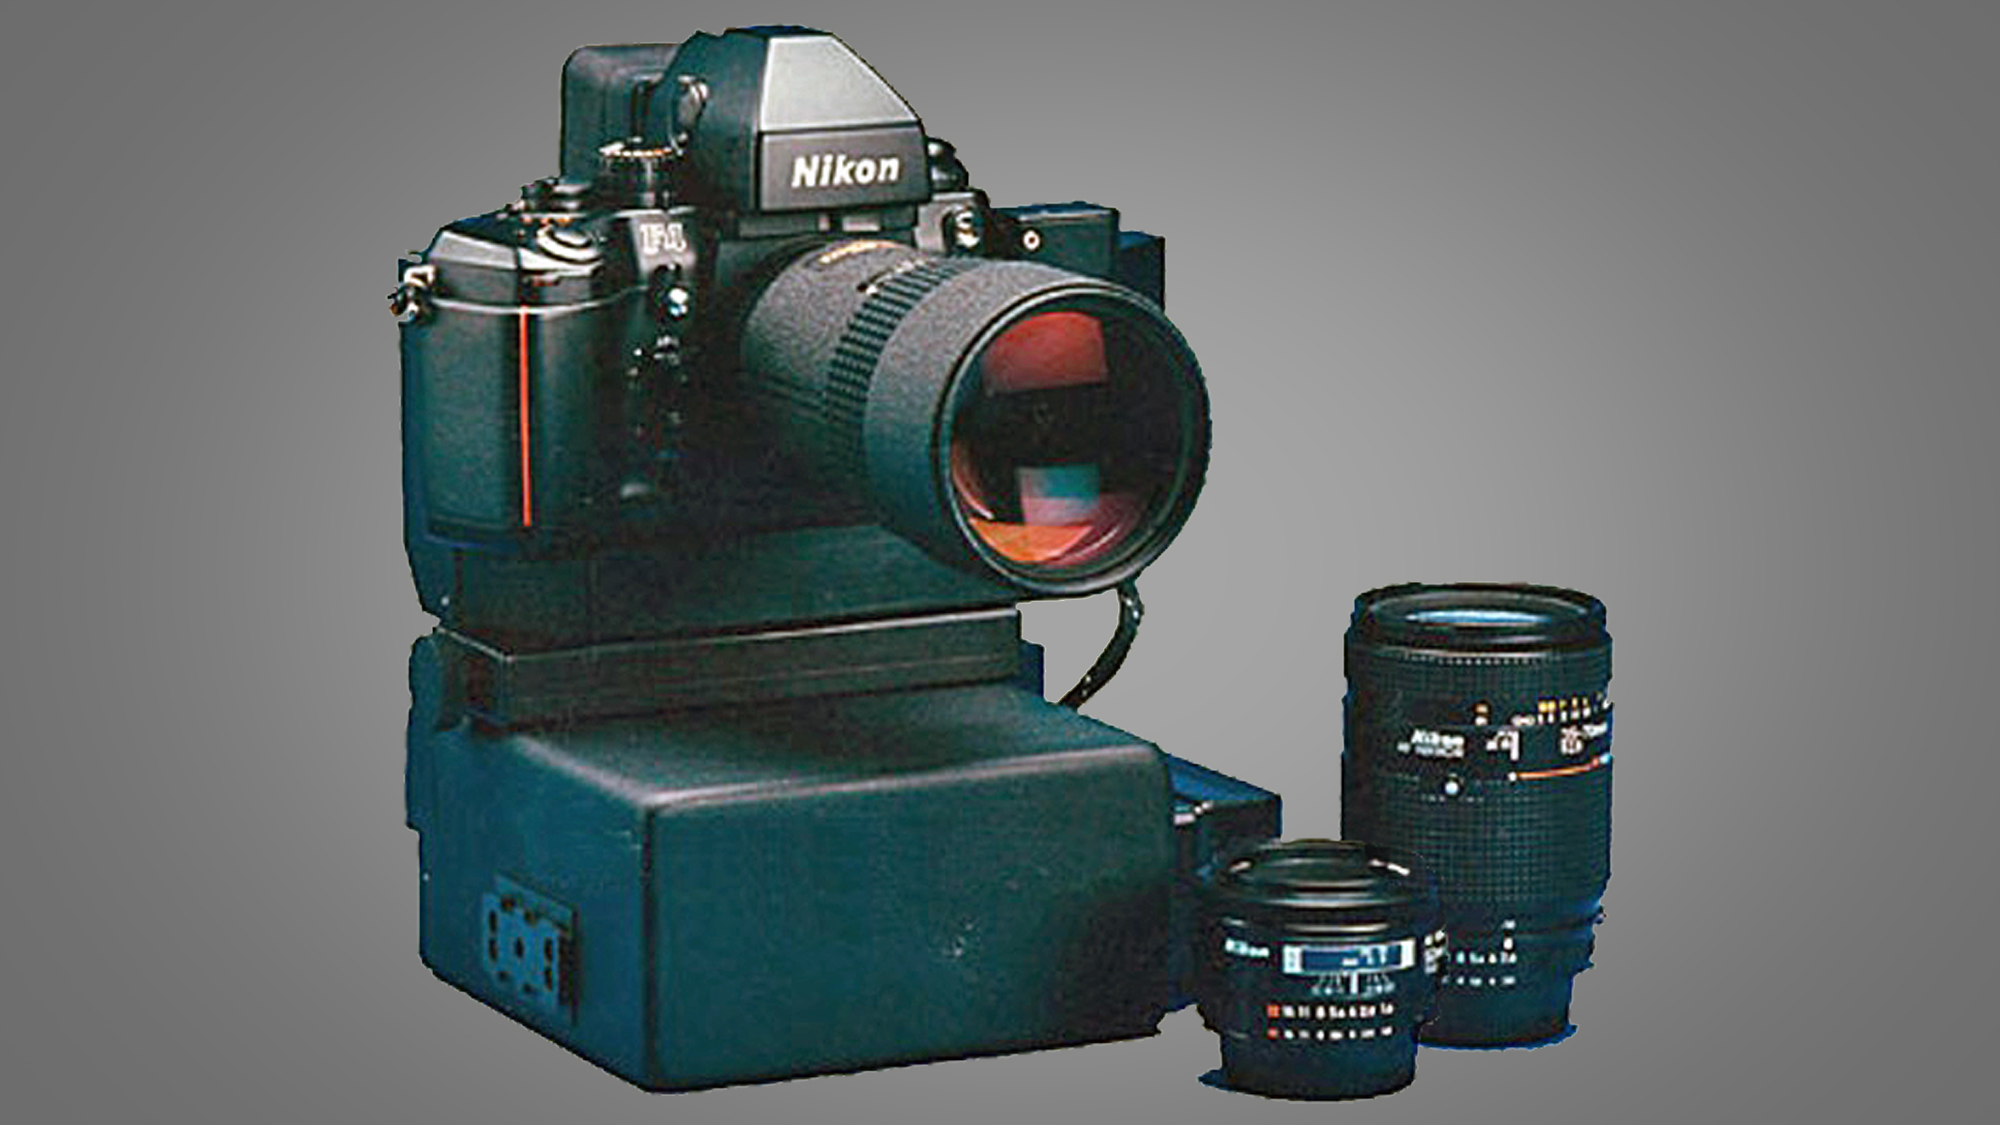 The NASA Nikon F4 camera and two lenses